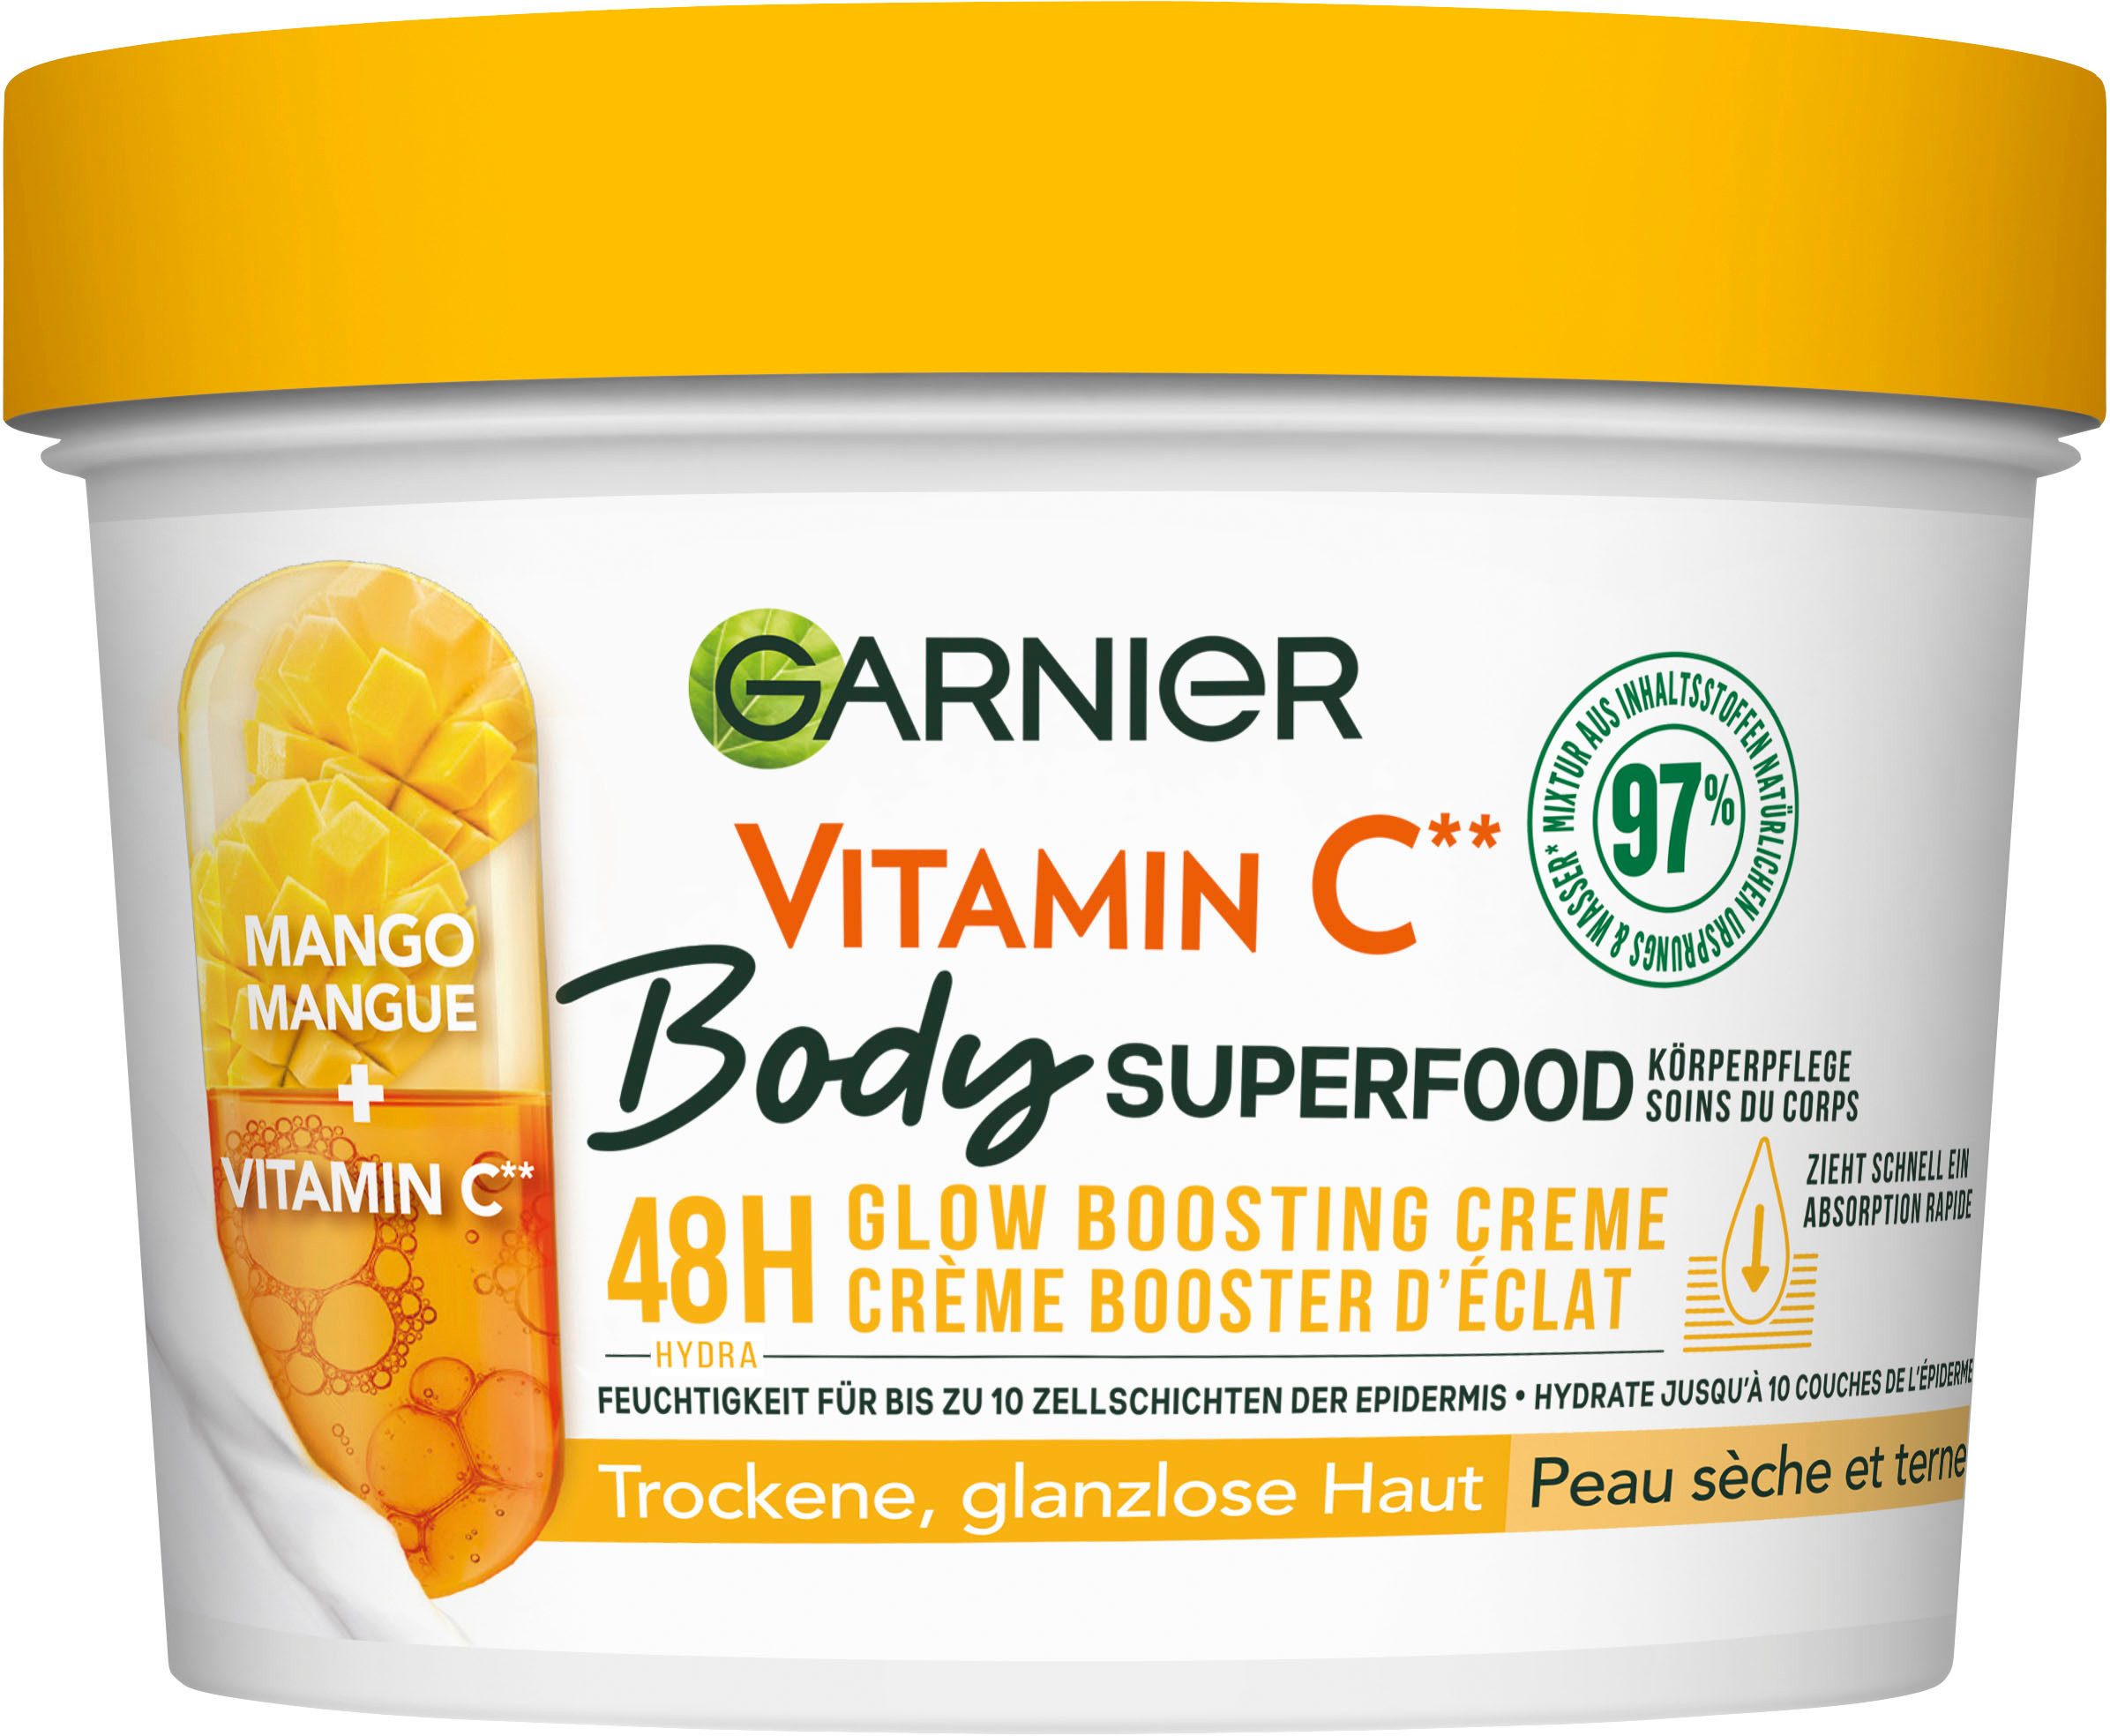 GARNIER Körpercreme Garnier Body Superfood Mango Vitamin C, mit Vitamin C